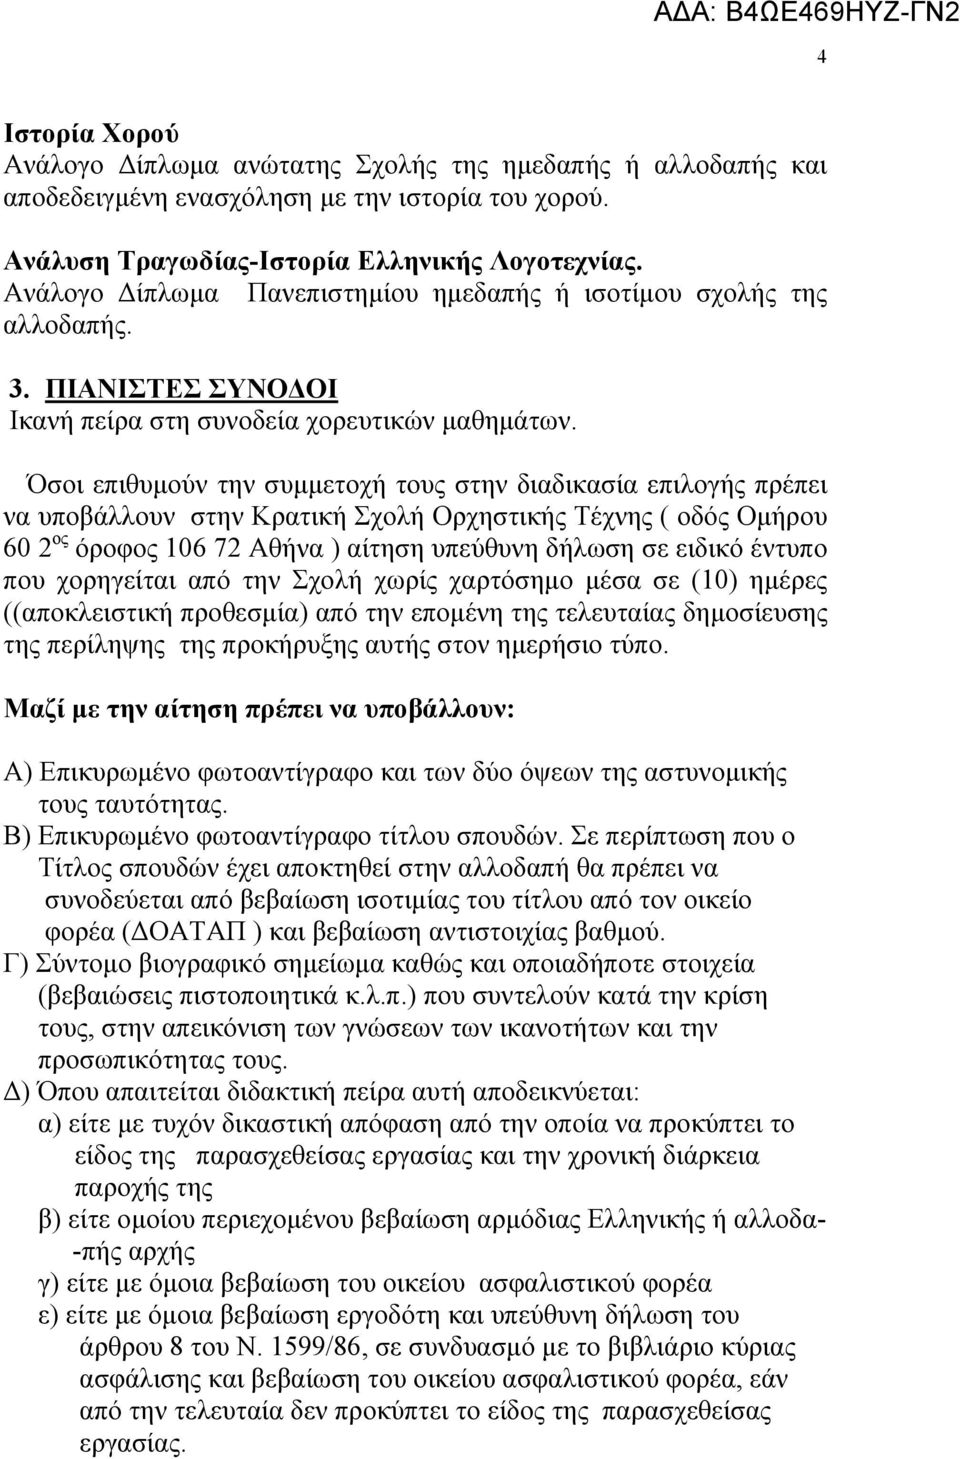 Όσοι επιθυμούν την συμμετοχή τους στην διαδικασία επιλογής πρέπει να υποβάλλουν στην Κρατική Σχολή Ορχηστικής Τέχνης ( οδός Ομήρου 60 2 ος όροφος 106 72 Αθήνα ) αίτηση υπεύθυνη δήλωση σε ειδικό